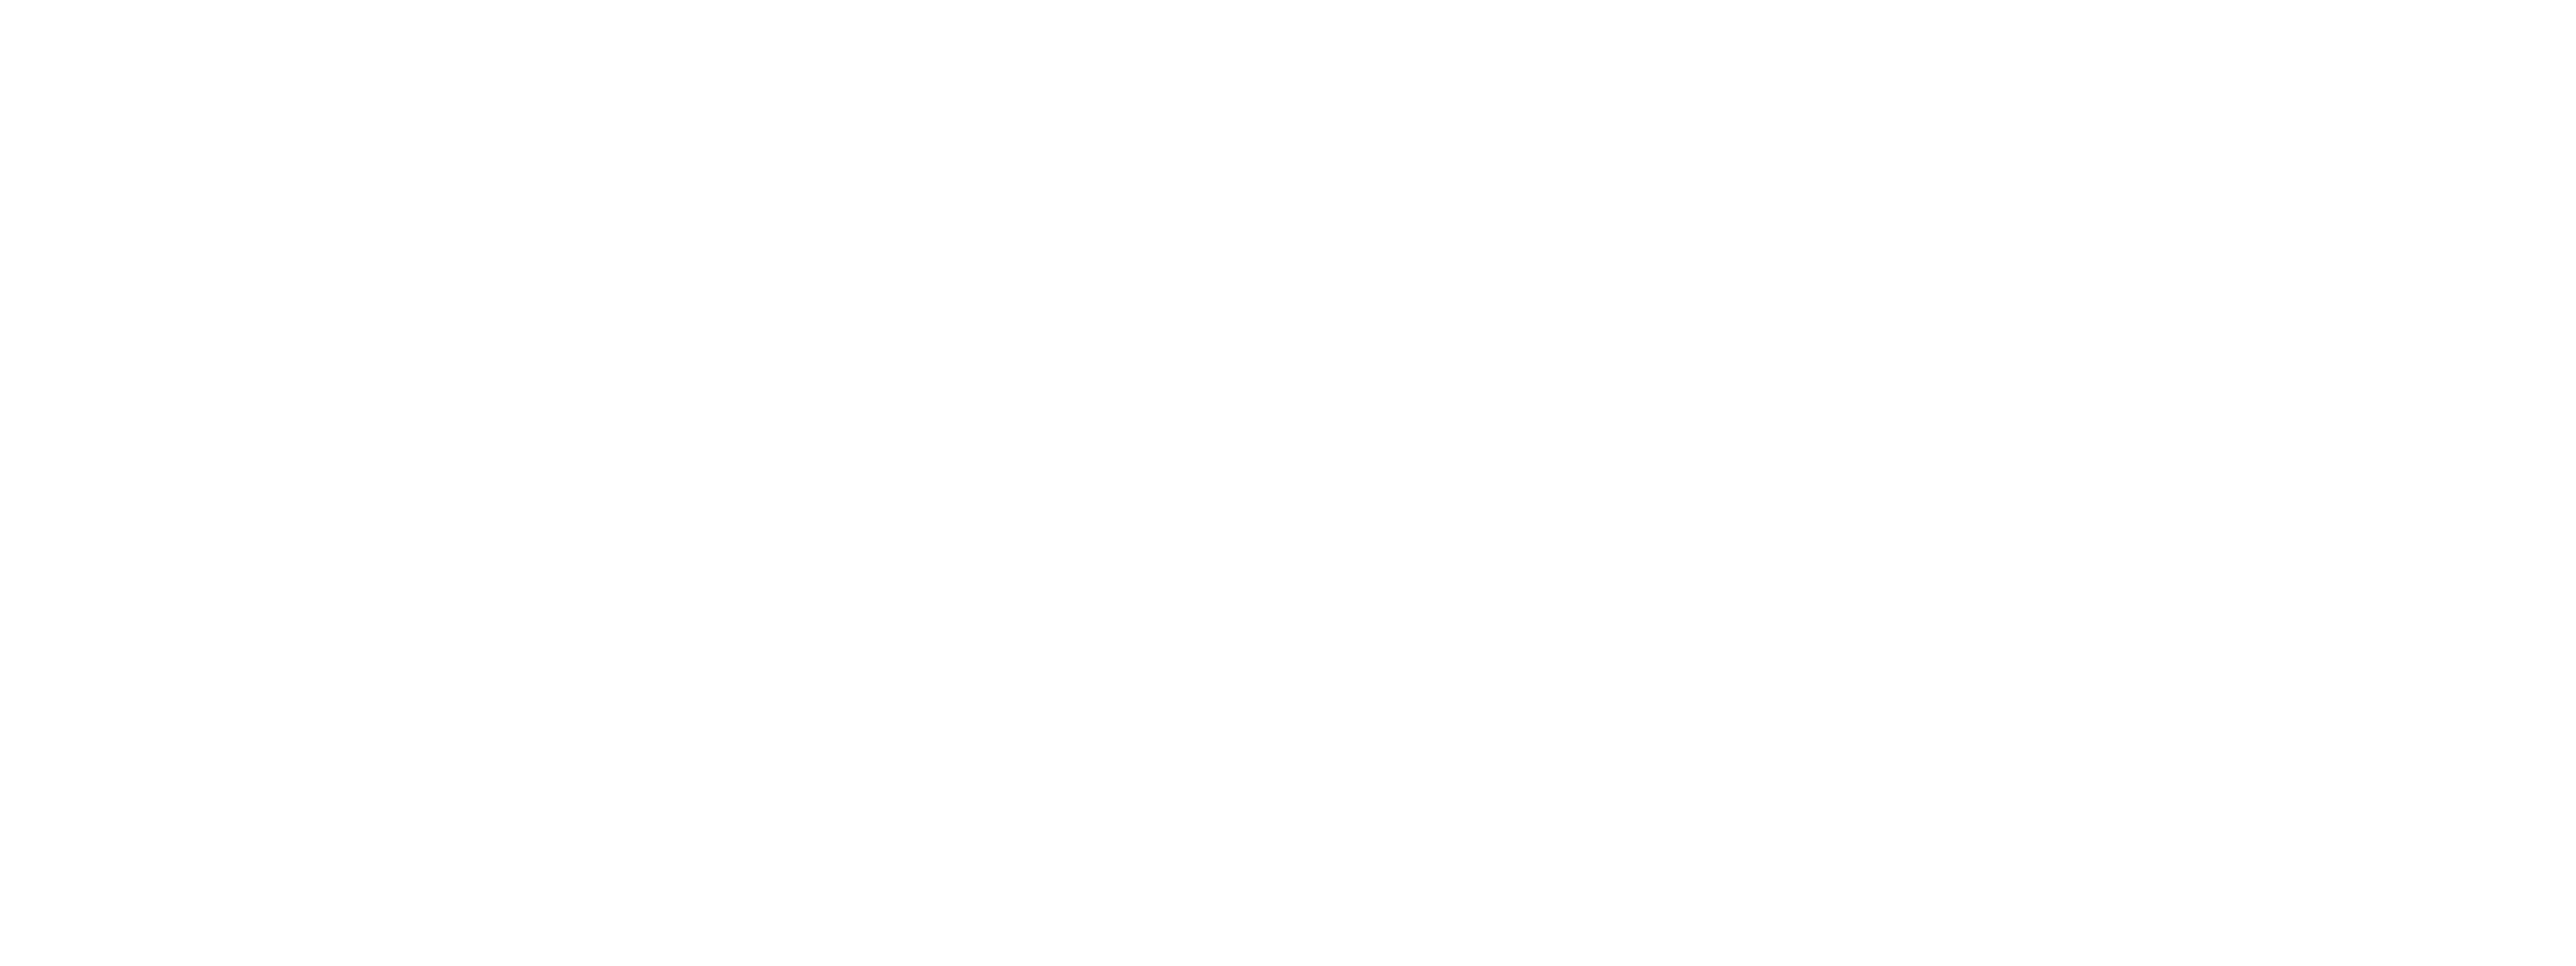 NHB Logo